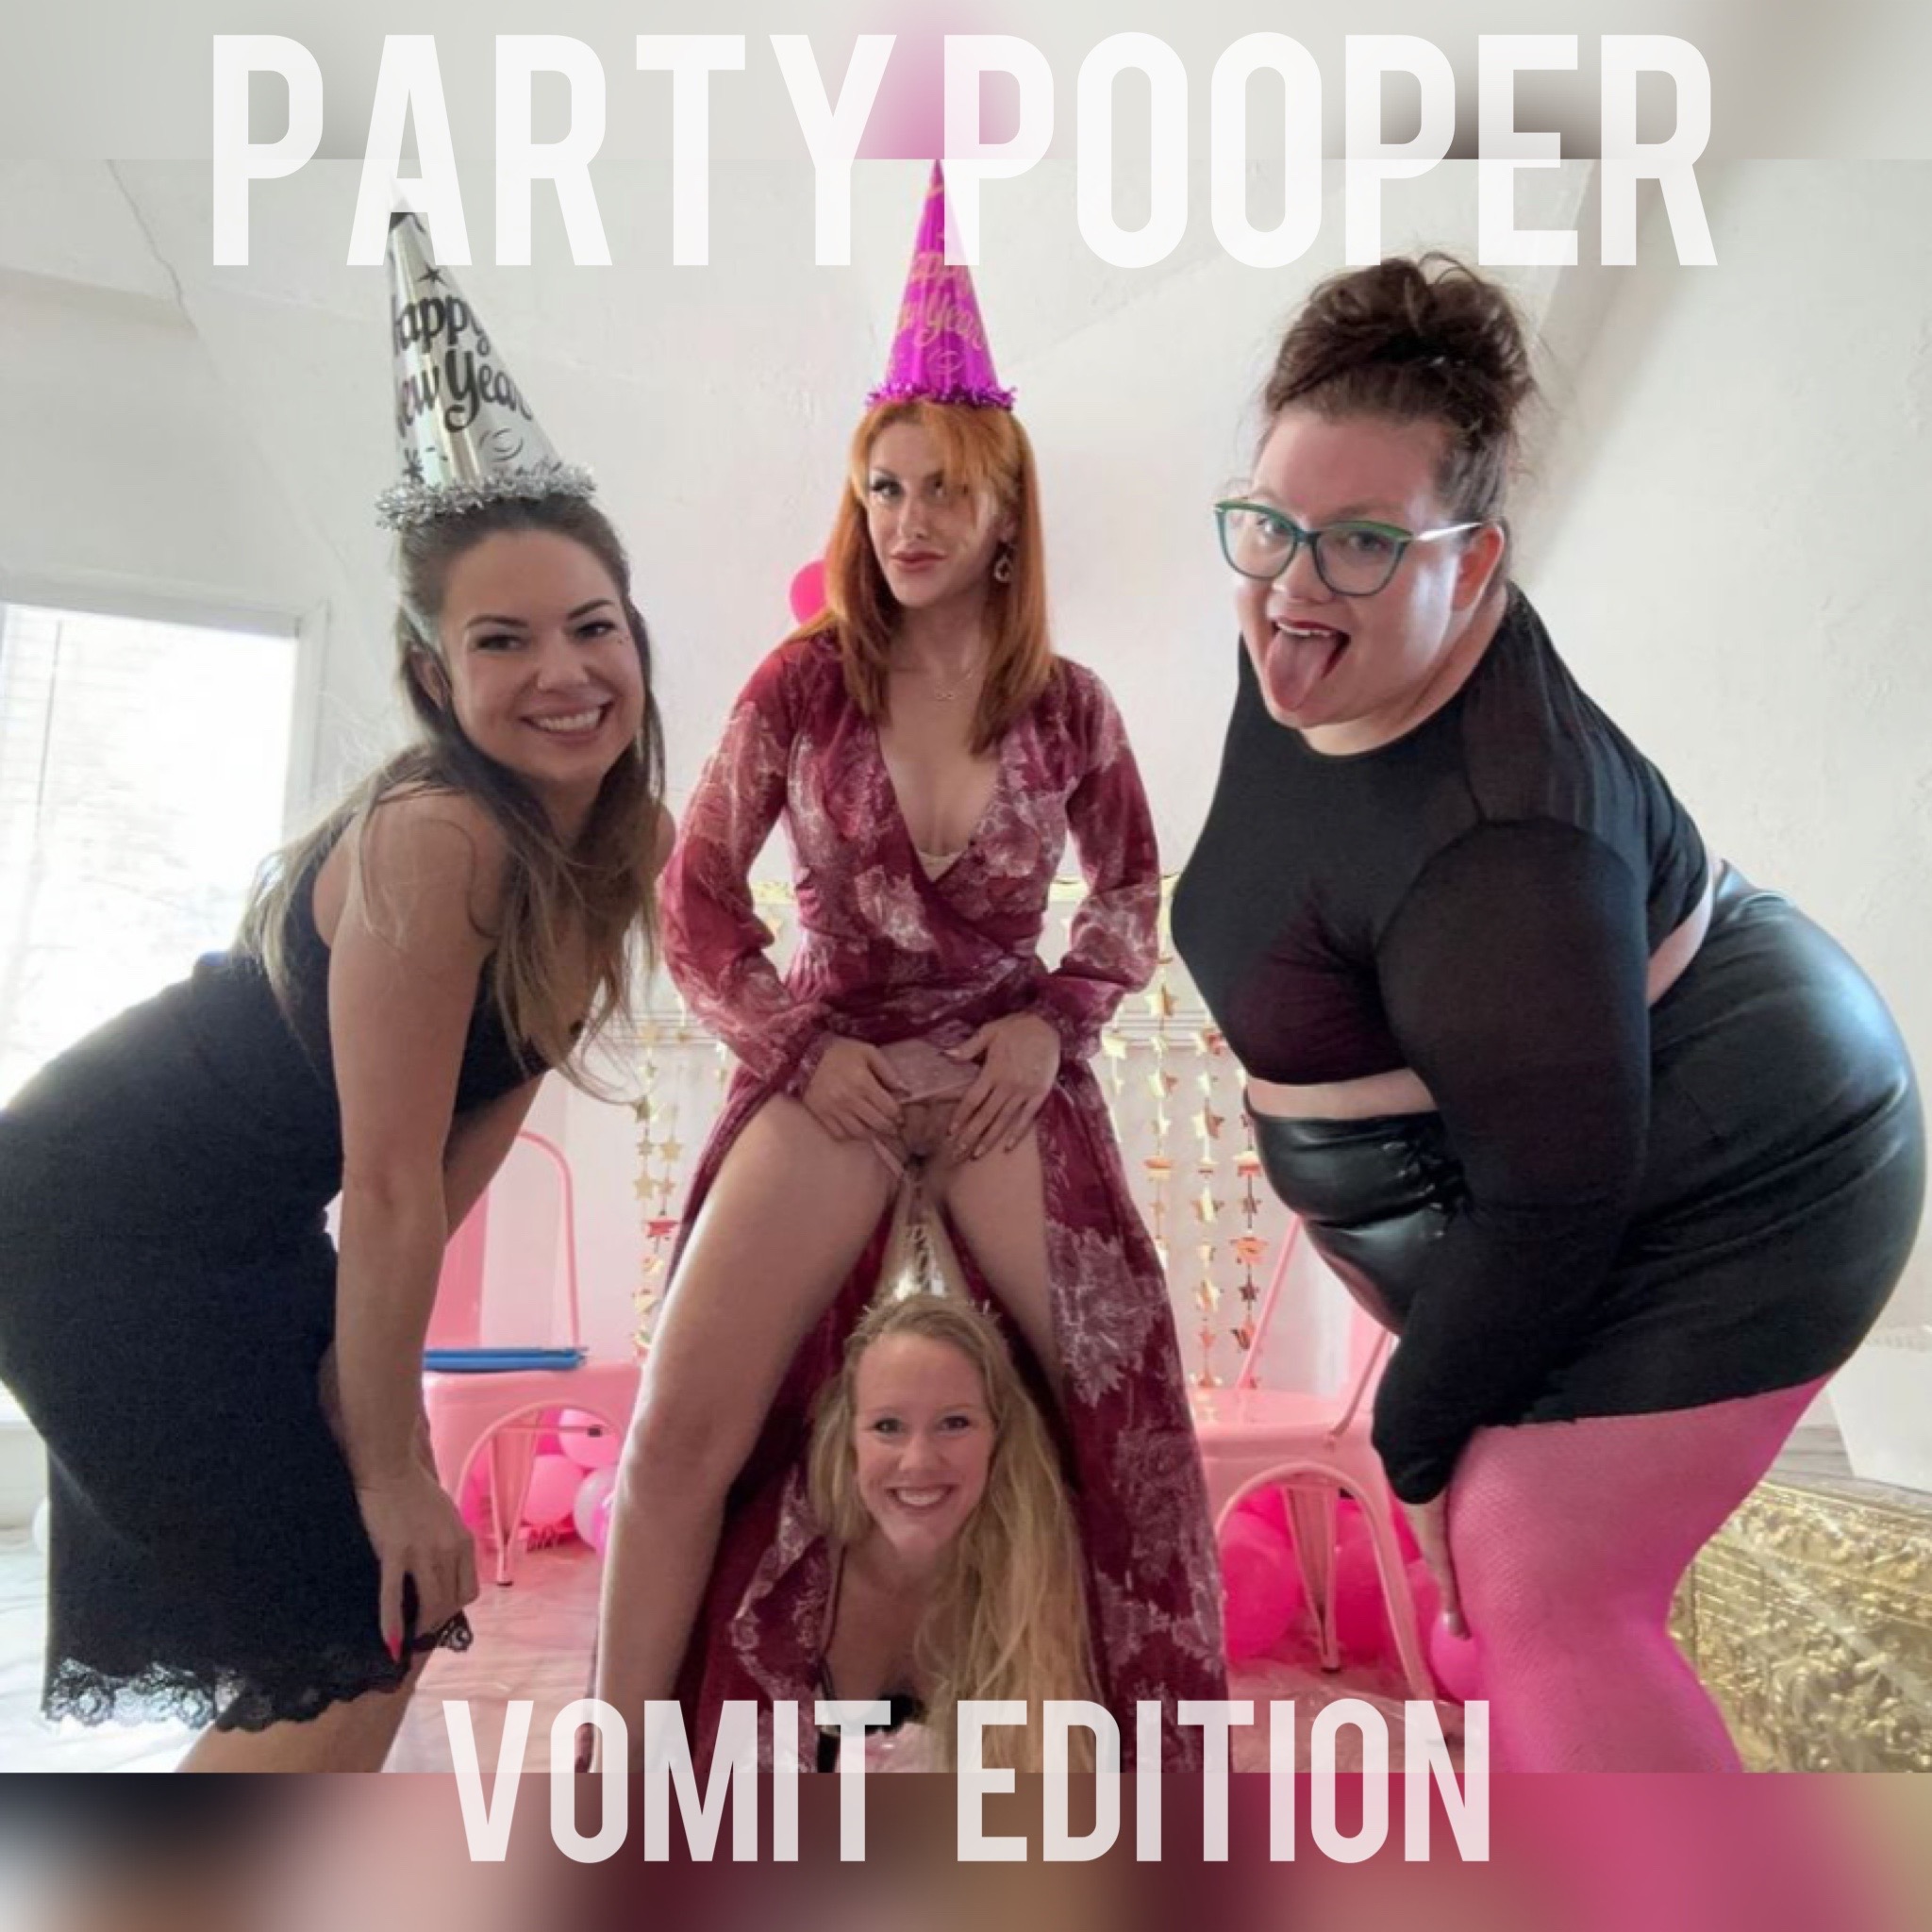 Pary Pooper Vomit edition